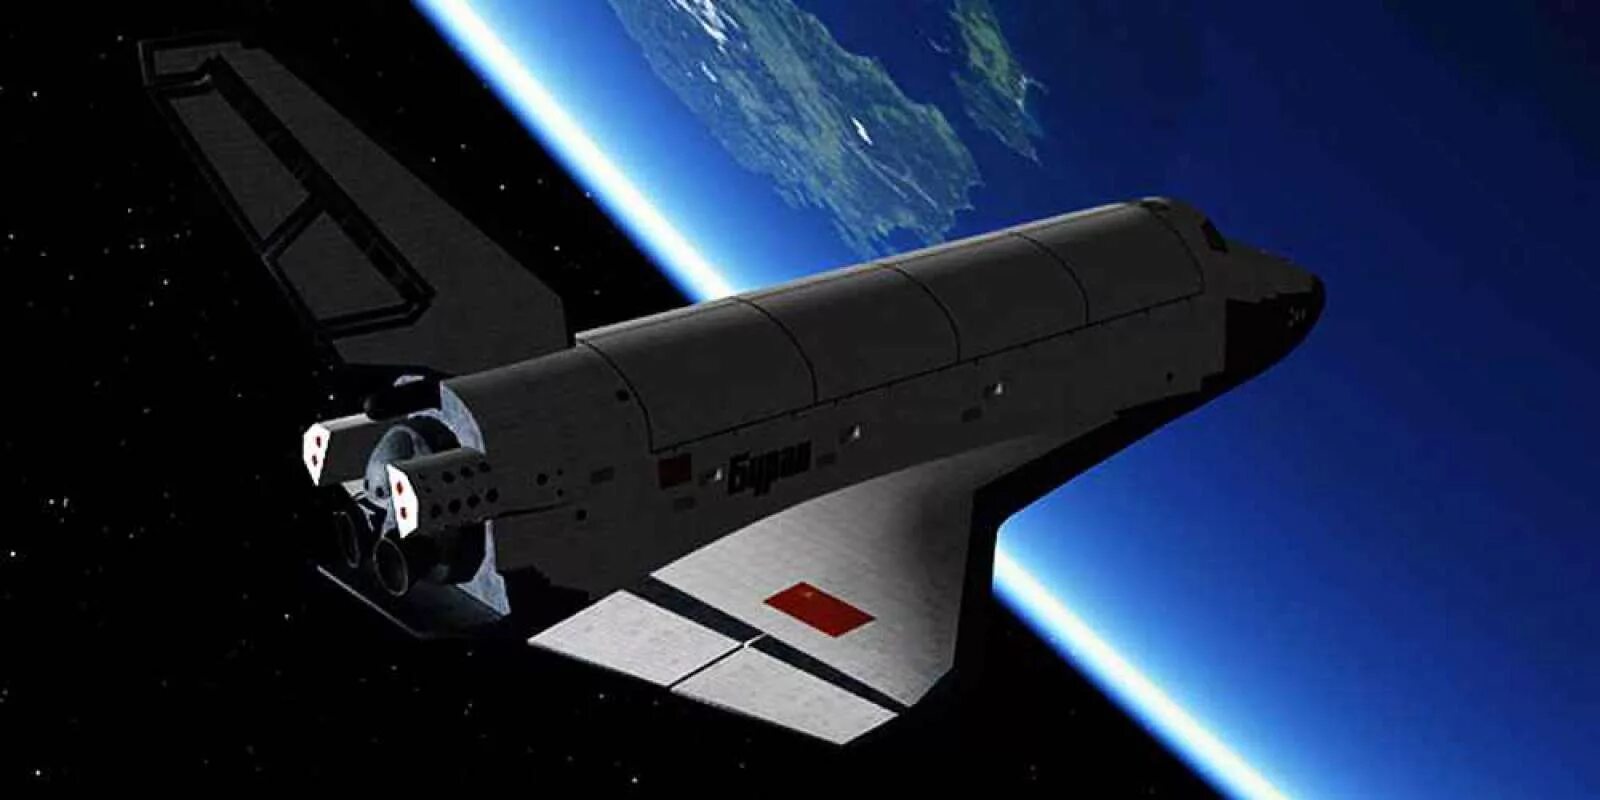 Как назывался многоразовый космический корабль. Космический корабль Буран. Орбитальный самолет Буран. Советский космический корабль Буран. Многоразовый орбитальный корабль Буран.